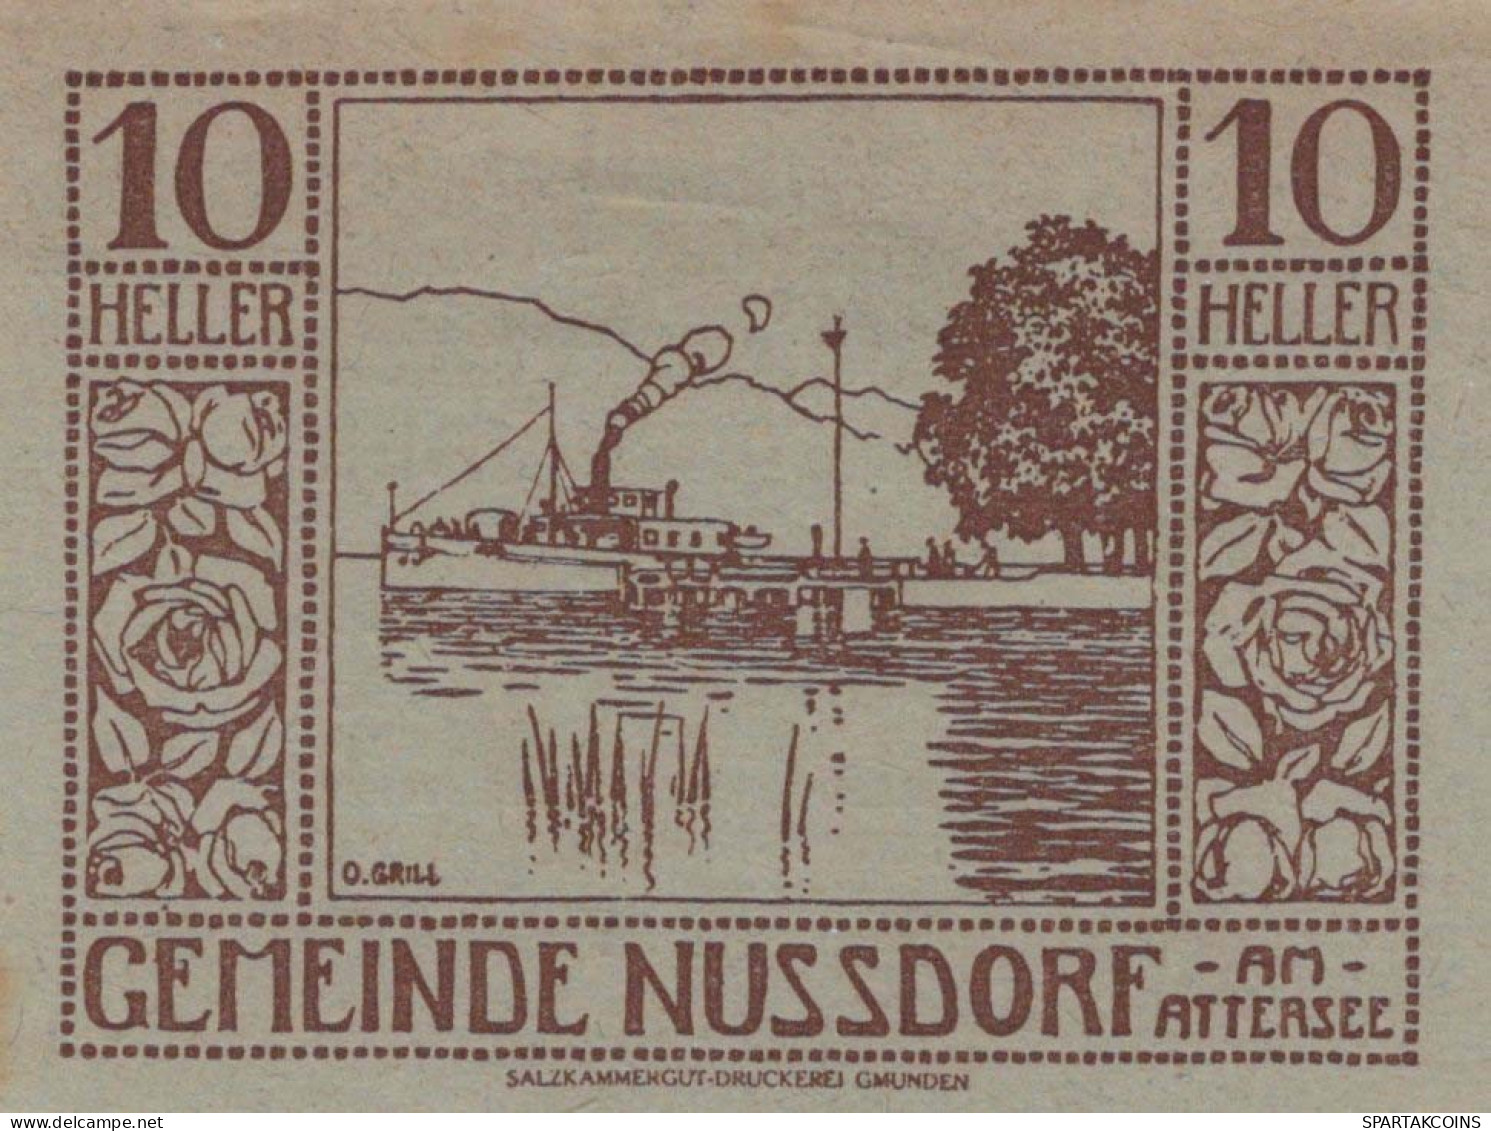 10 HELLER 1920 Stadt NUSSDORF AM ATTERSEE Oberösterreich Österreich #PI330 - [11] Emissioni Locali